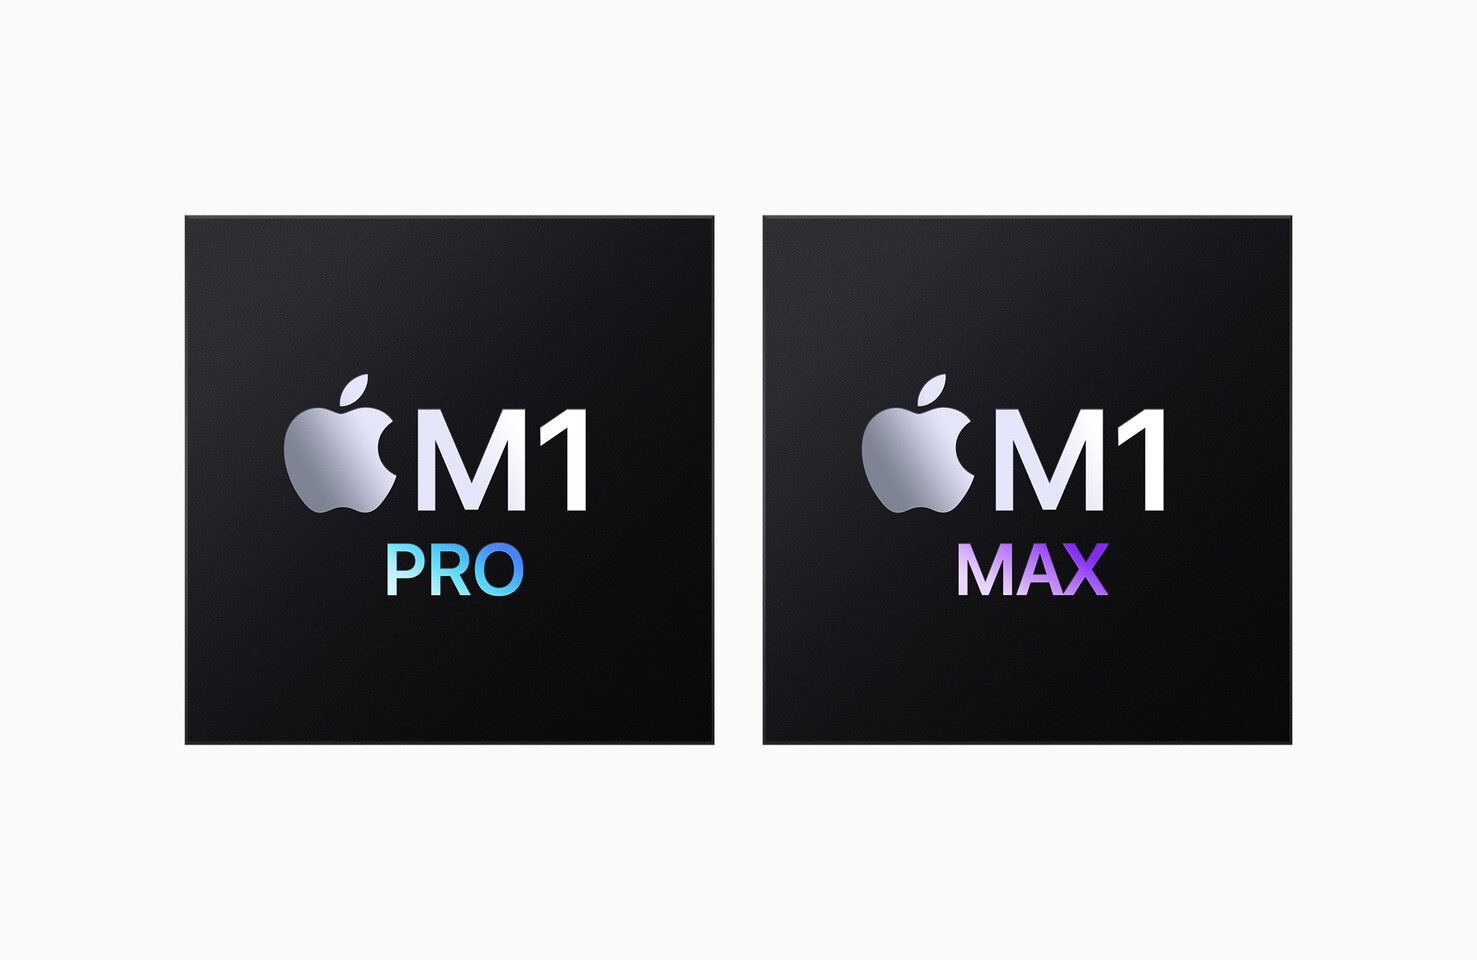 Apple anunció hoy M1 Pro y M1 Max, los próximos chips innovadores para Mac. Ampliando la arquitectura transformacional de M1